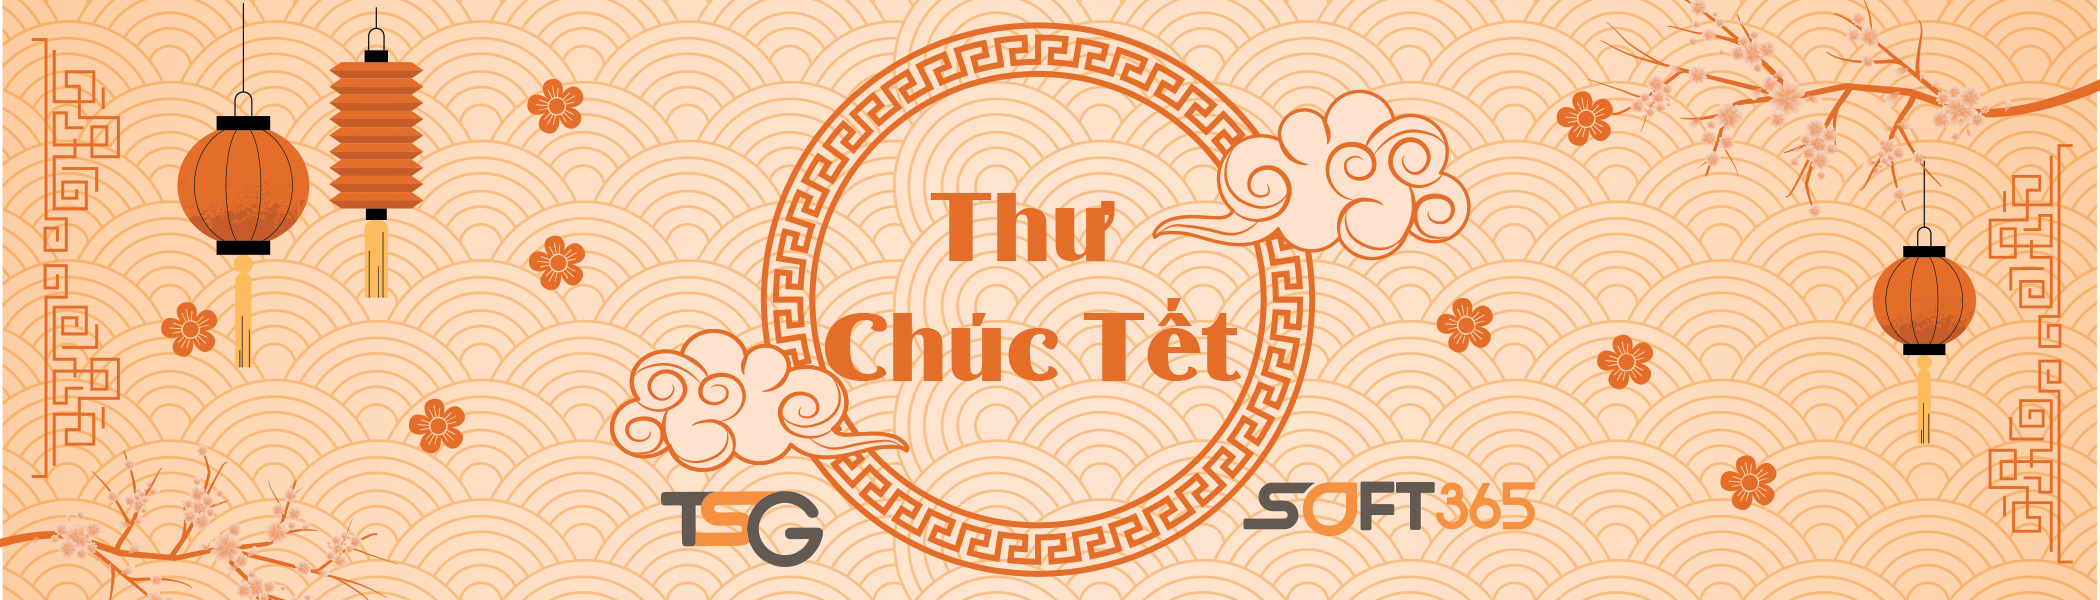 Thu Chuc Tet